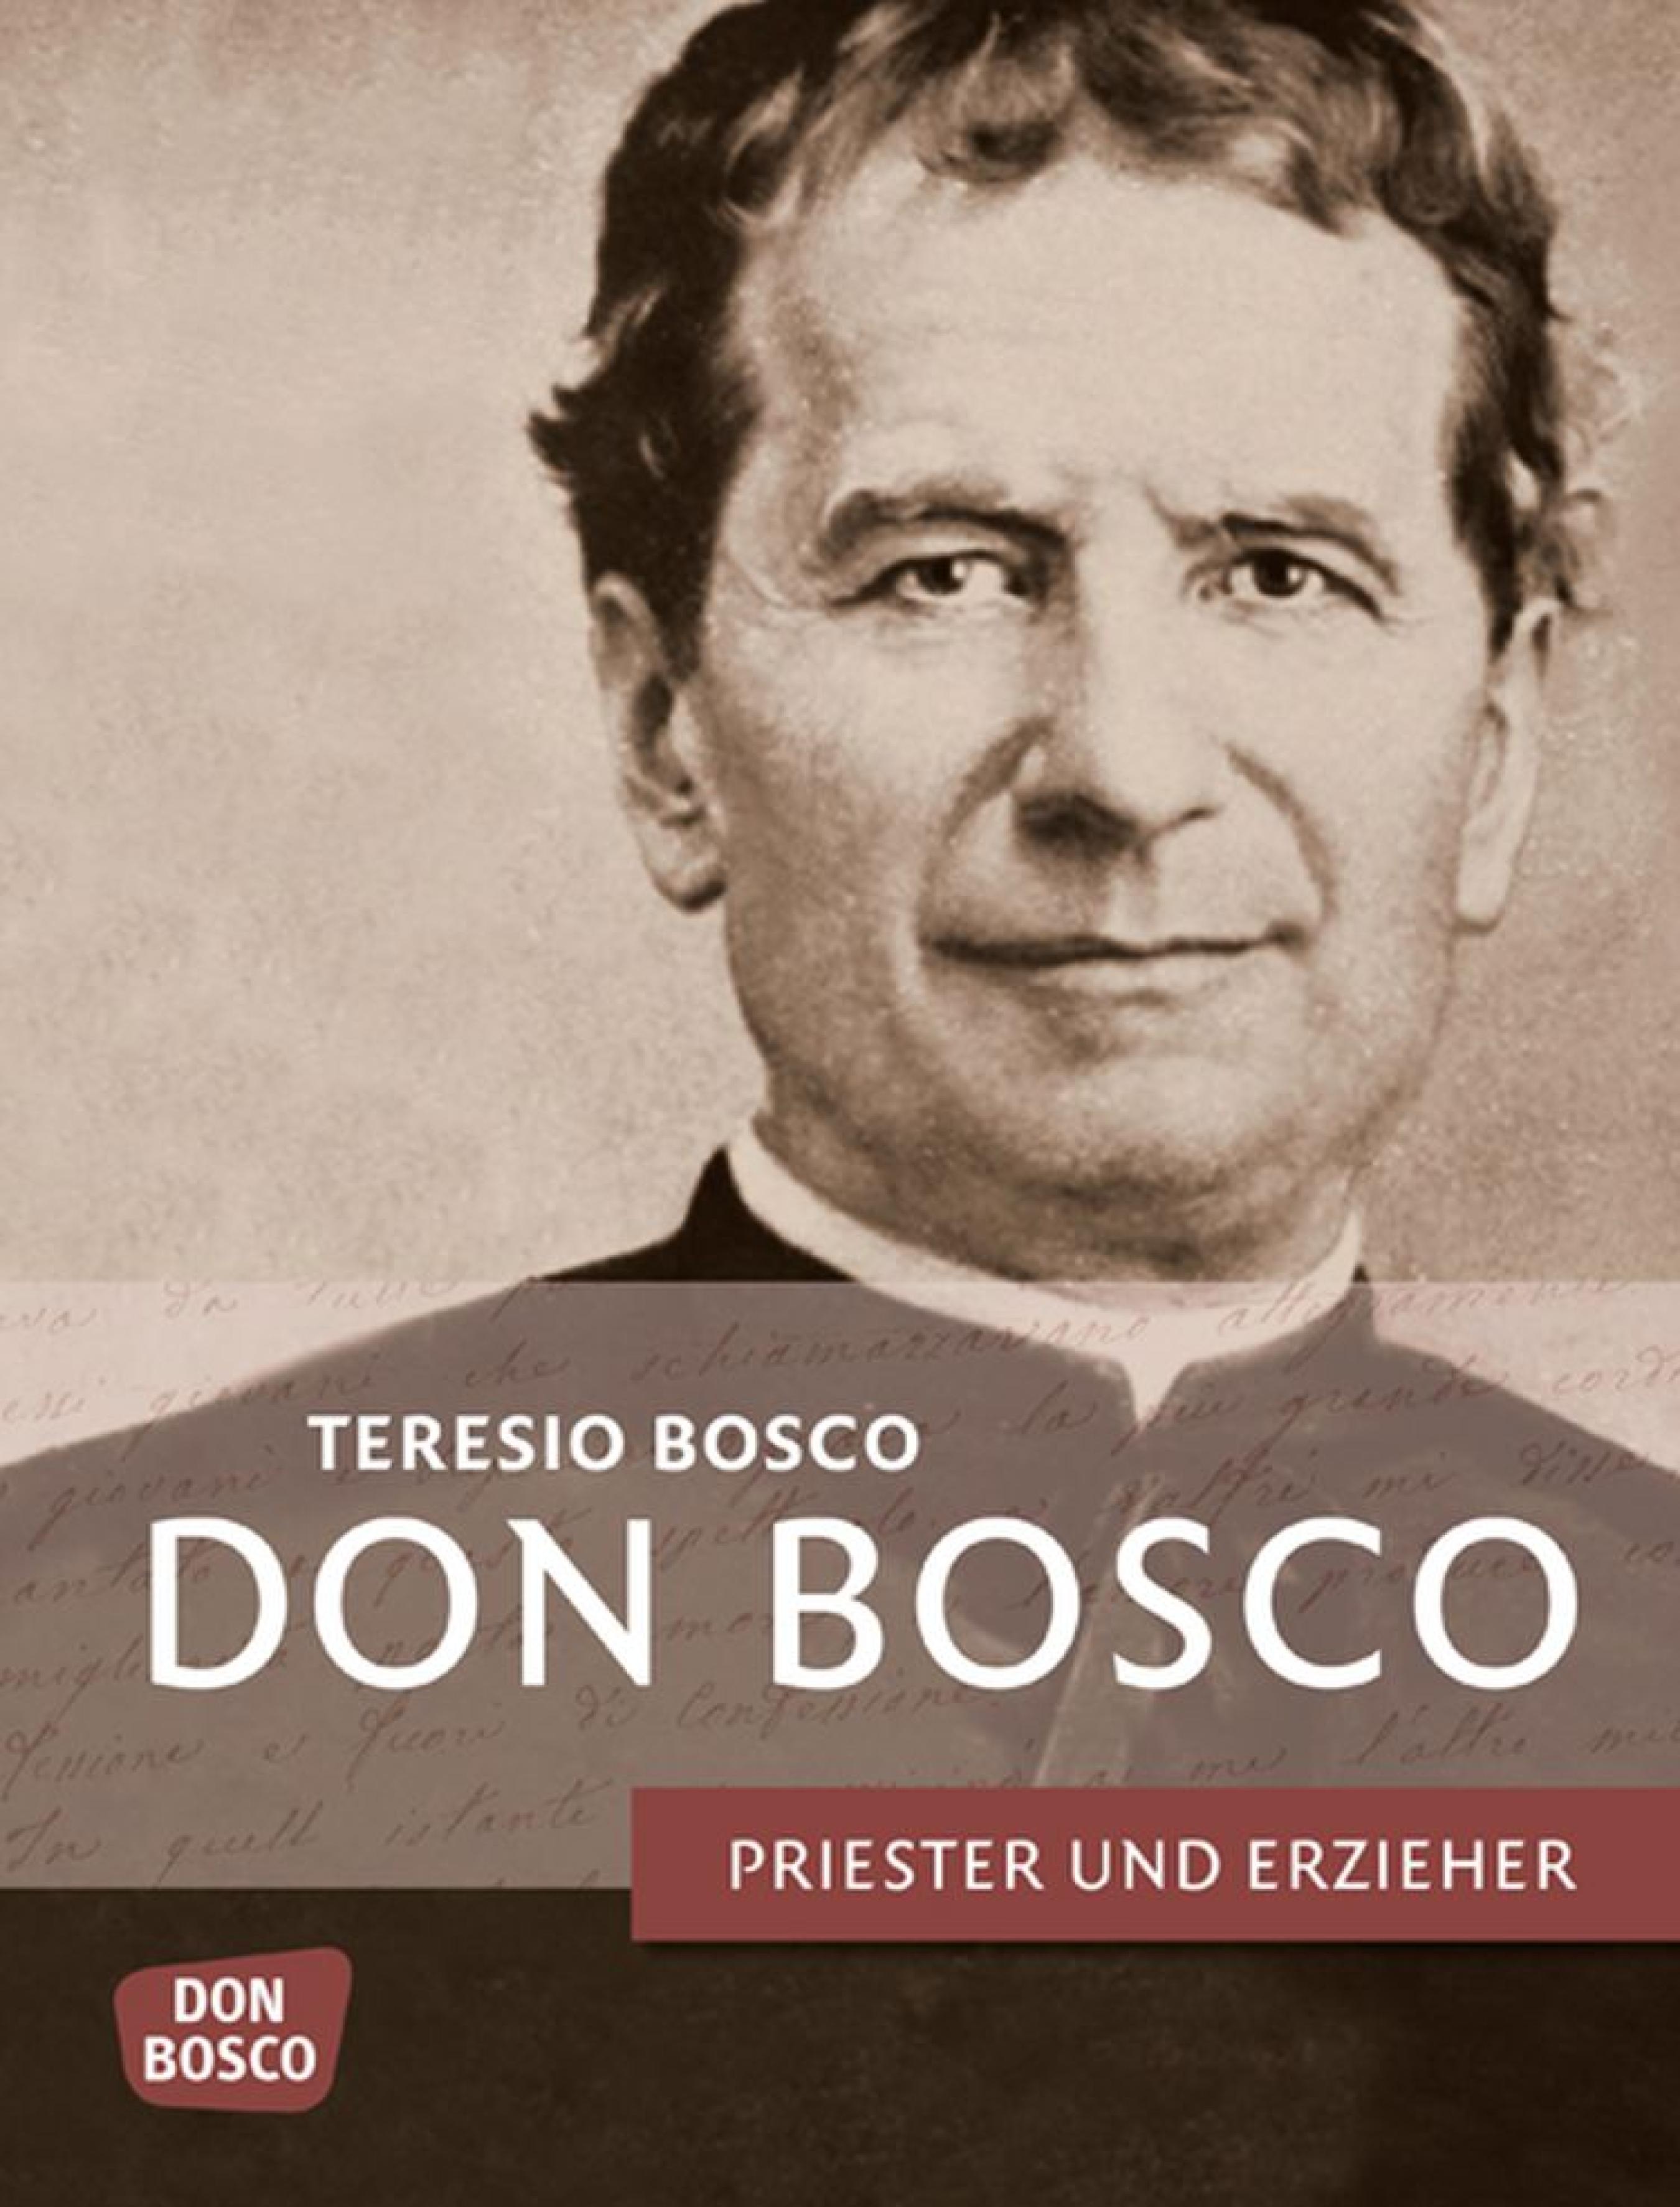 Don Bosco. Дон боско